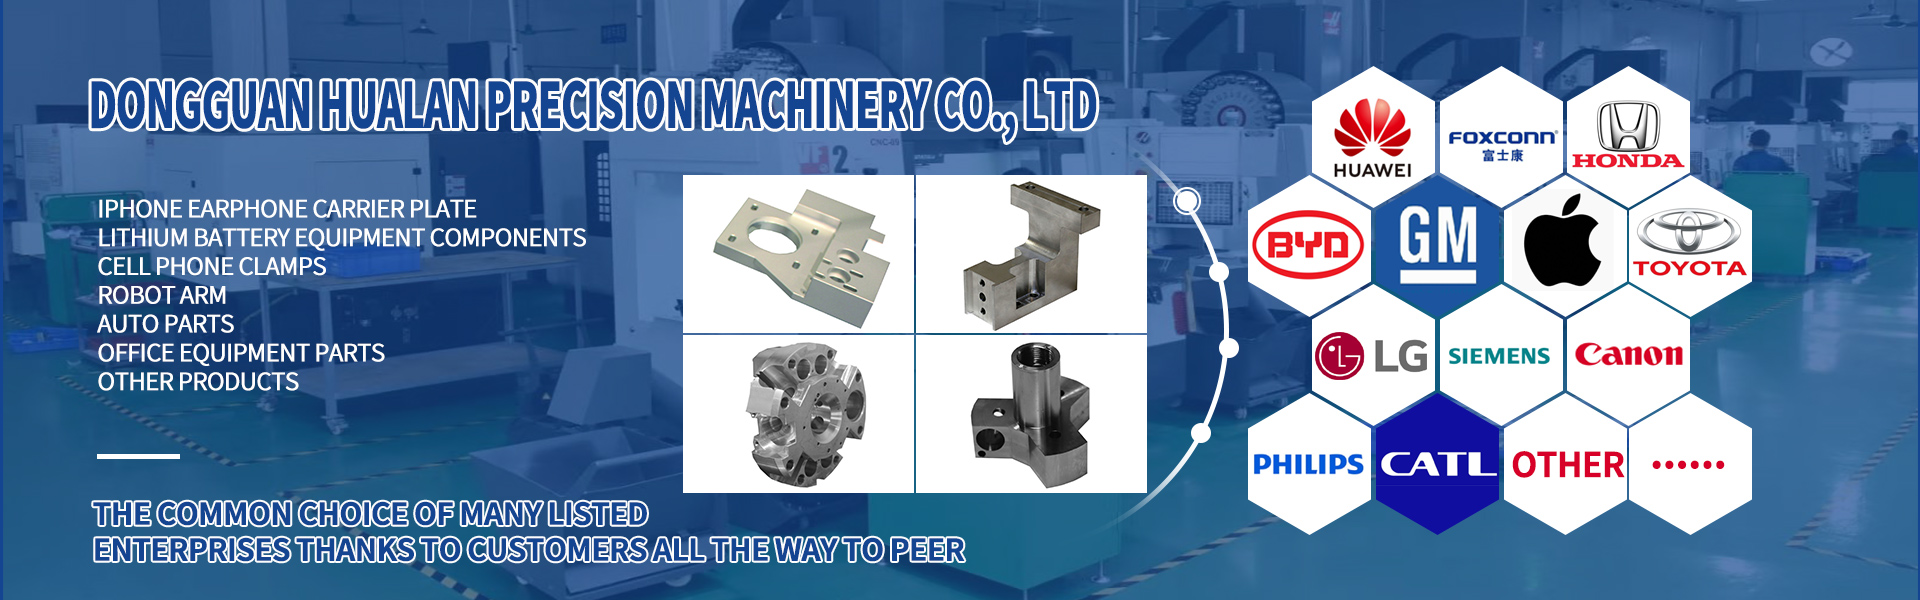 CNC-bearbetningsdelar, turning och fräsning, linjeskärning,Dongguan Hualan Precision Machinery Co., LTD